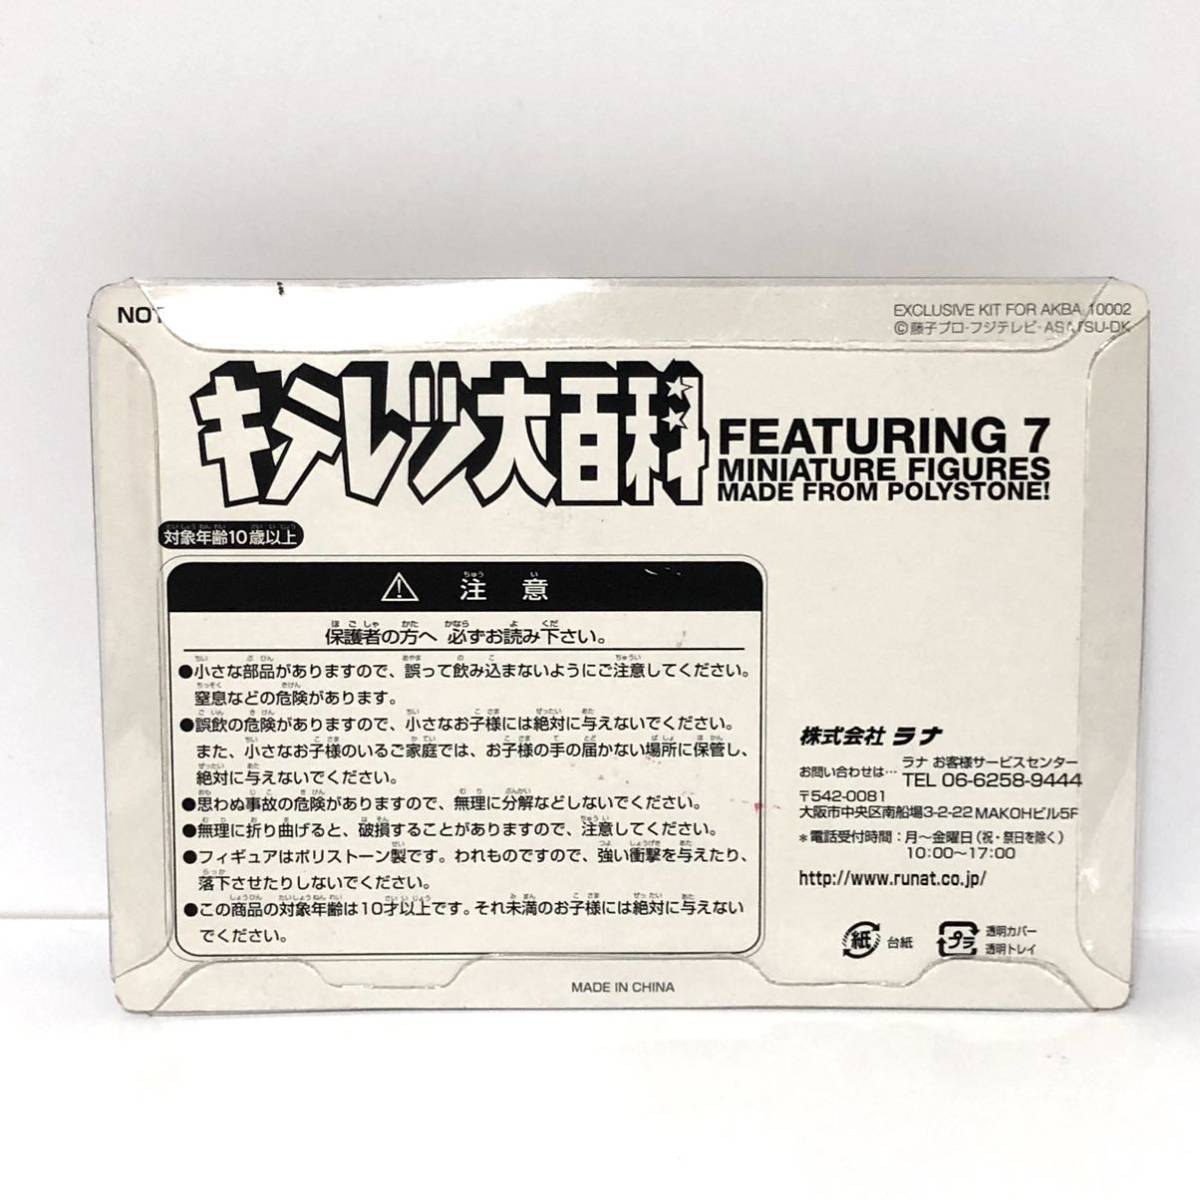 キテレツ大百科 DVD-BOX3 特典フィギュア ポリストーン ラナ RUNA 非売品_画像2